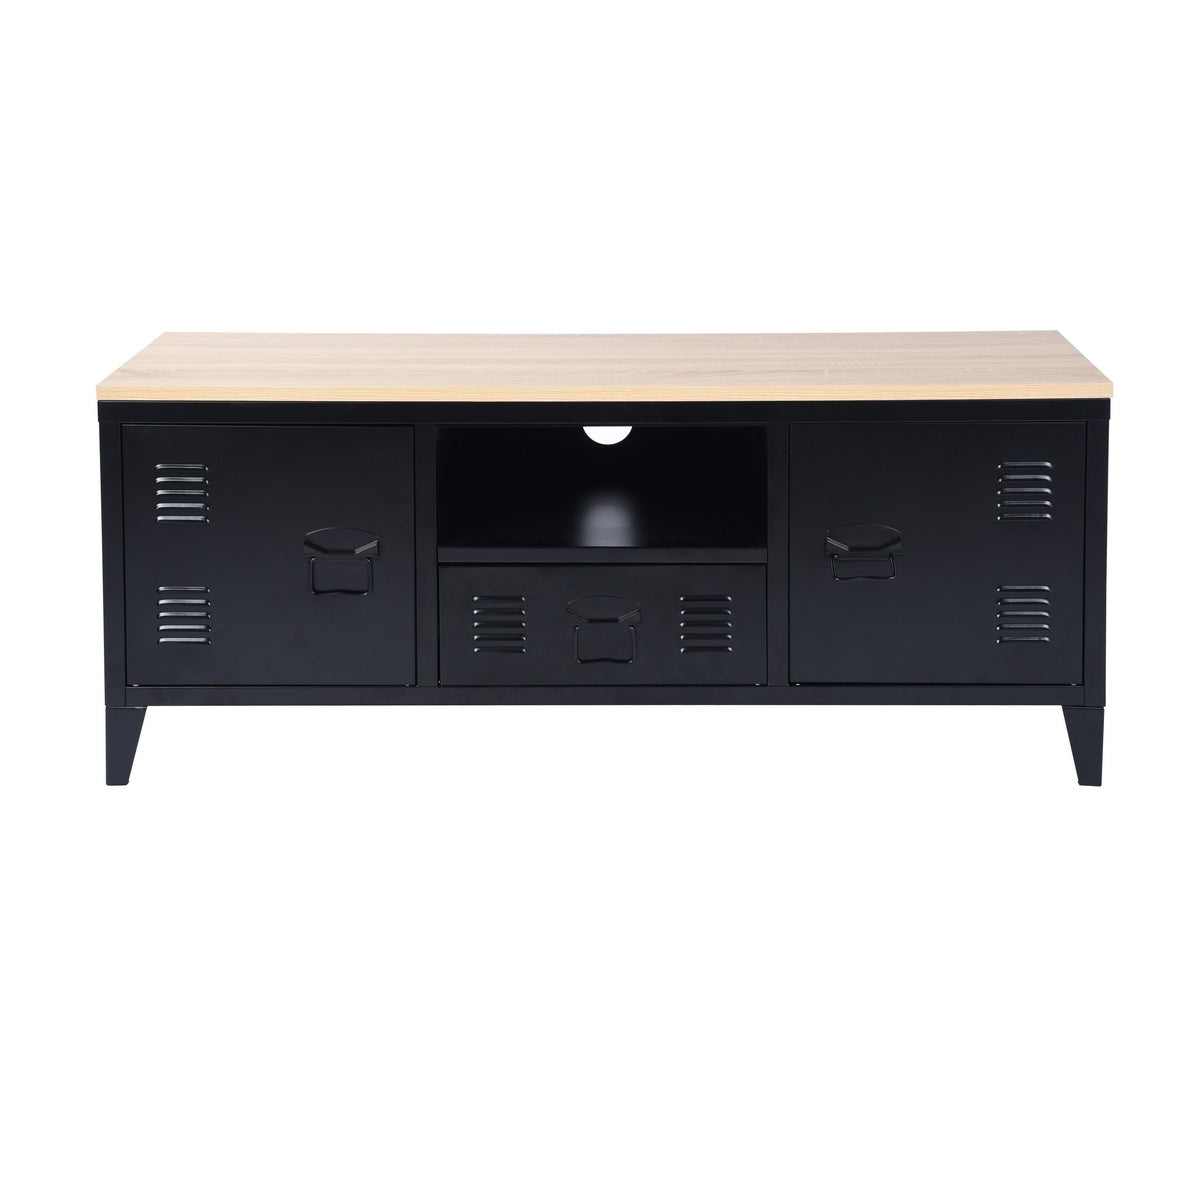 Meuble TV/Buffet salon en métal noir 3 portes et plateau en bois avec étagères - SULLIVAN OAK BLACK